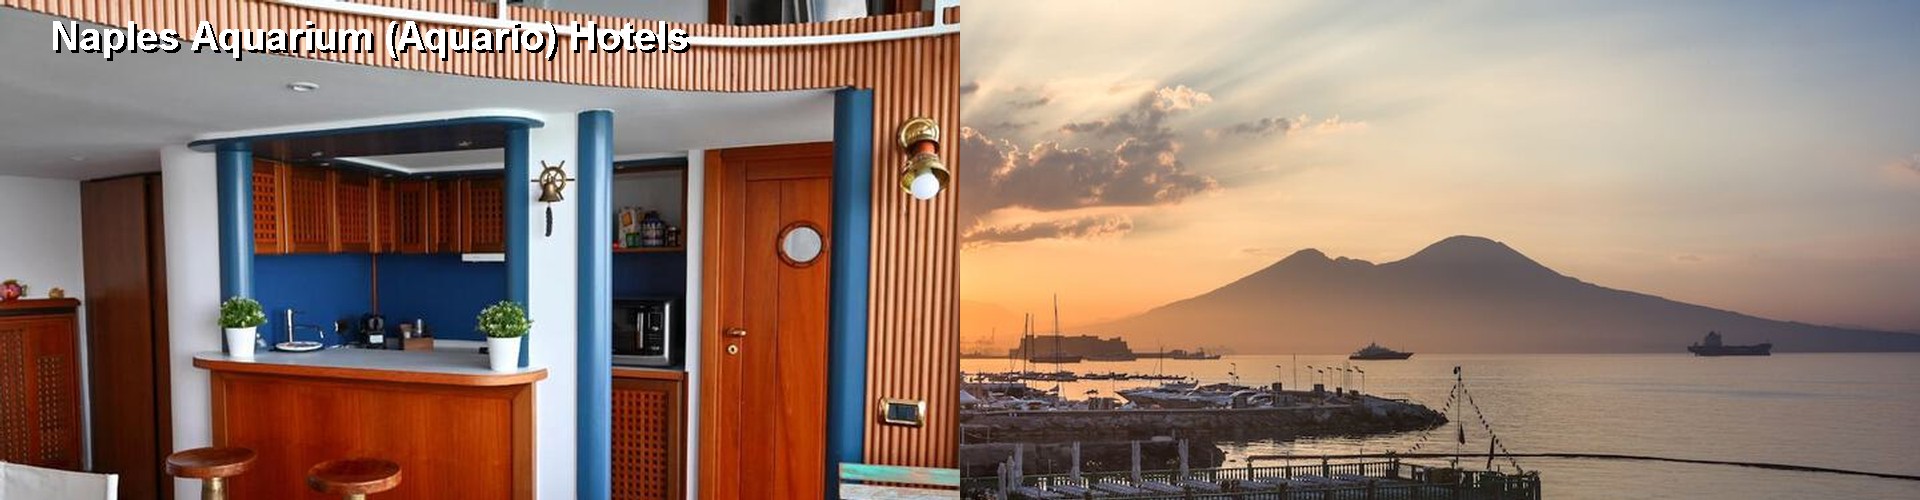 5 Best Hotels near Naples Aquarium (Aquario)